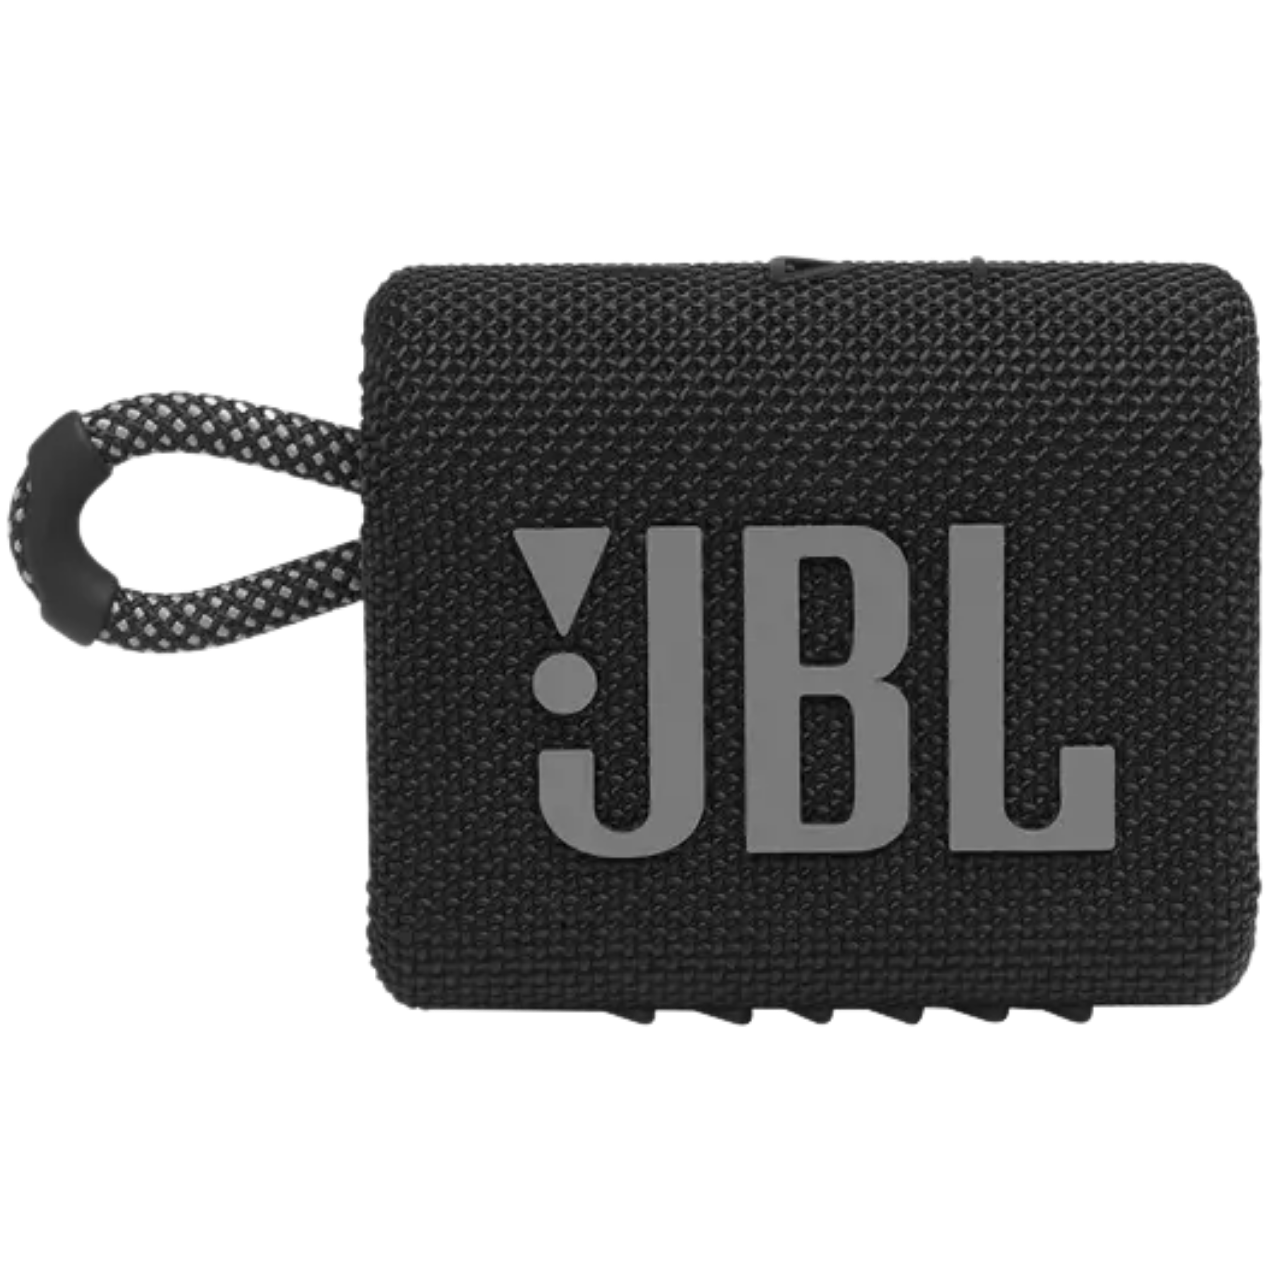 Black Friday JBL : ce casque très demandé est actuellement à moins de 75  euros